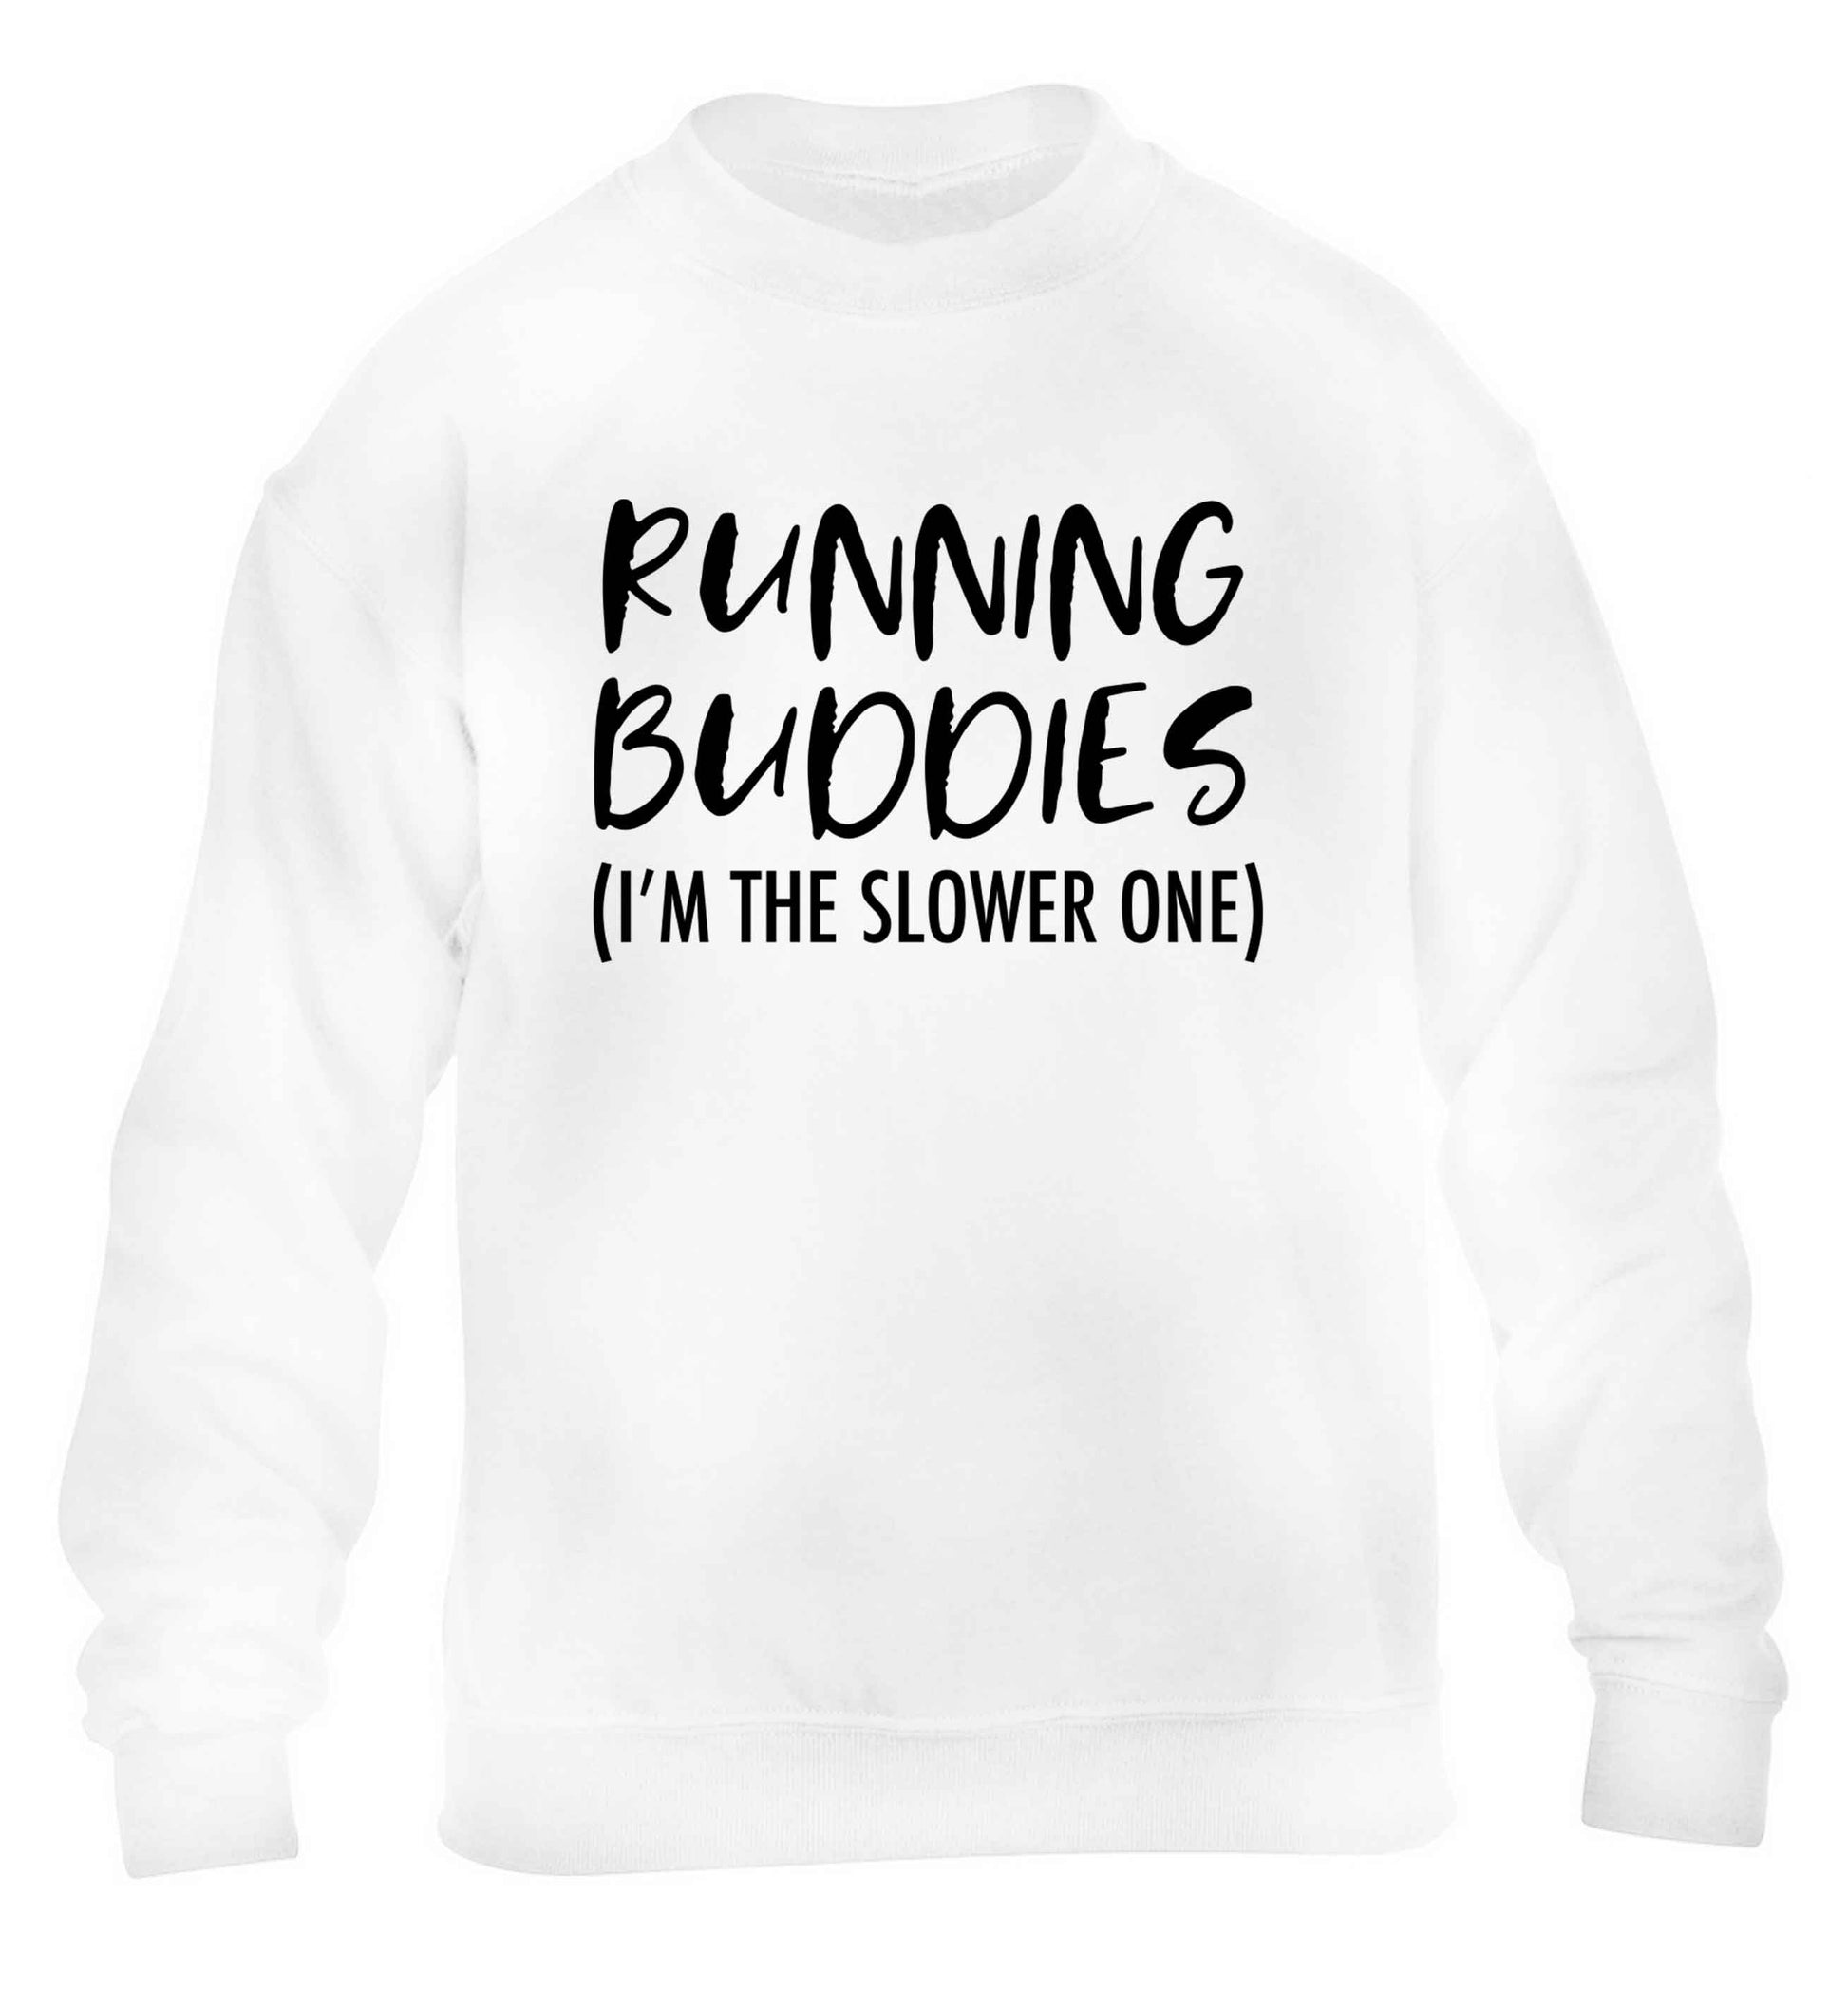 Running buddies (I'm the slower one) children's white sweater 12-13 Years